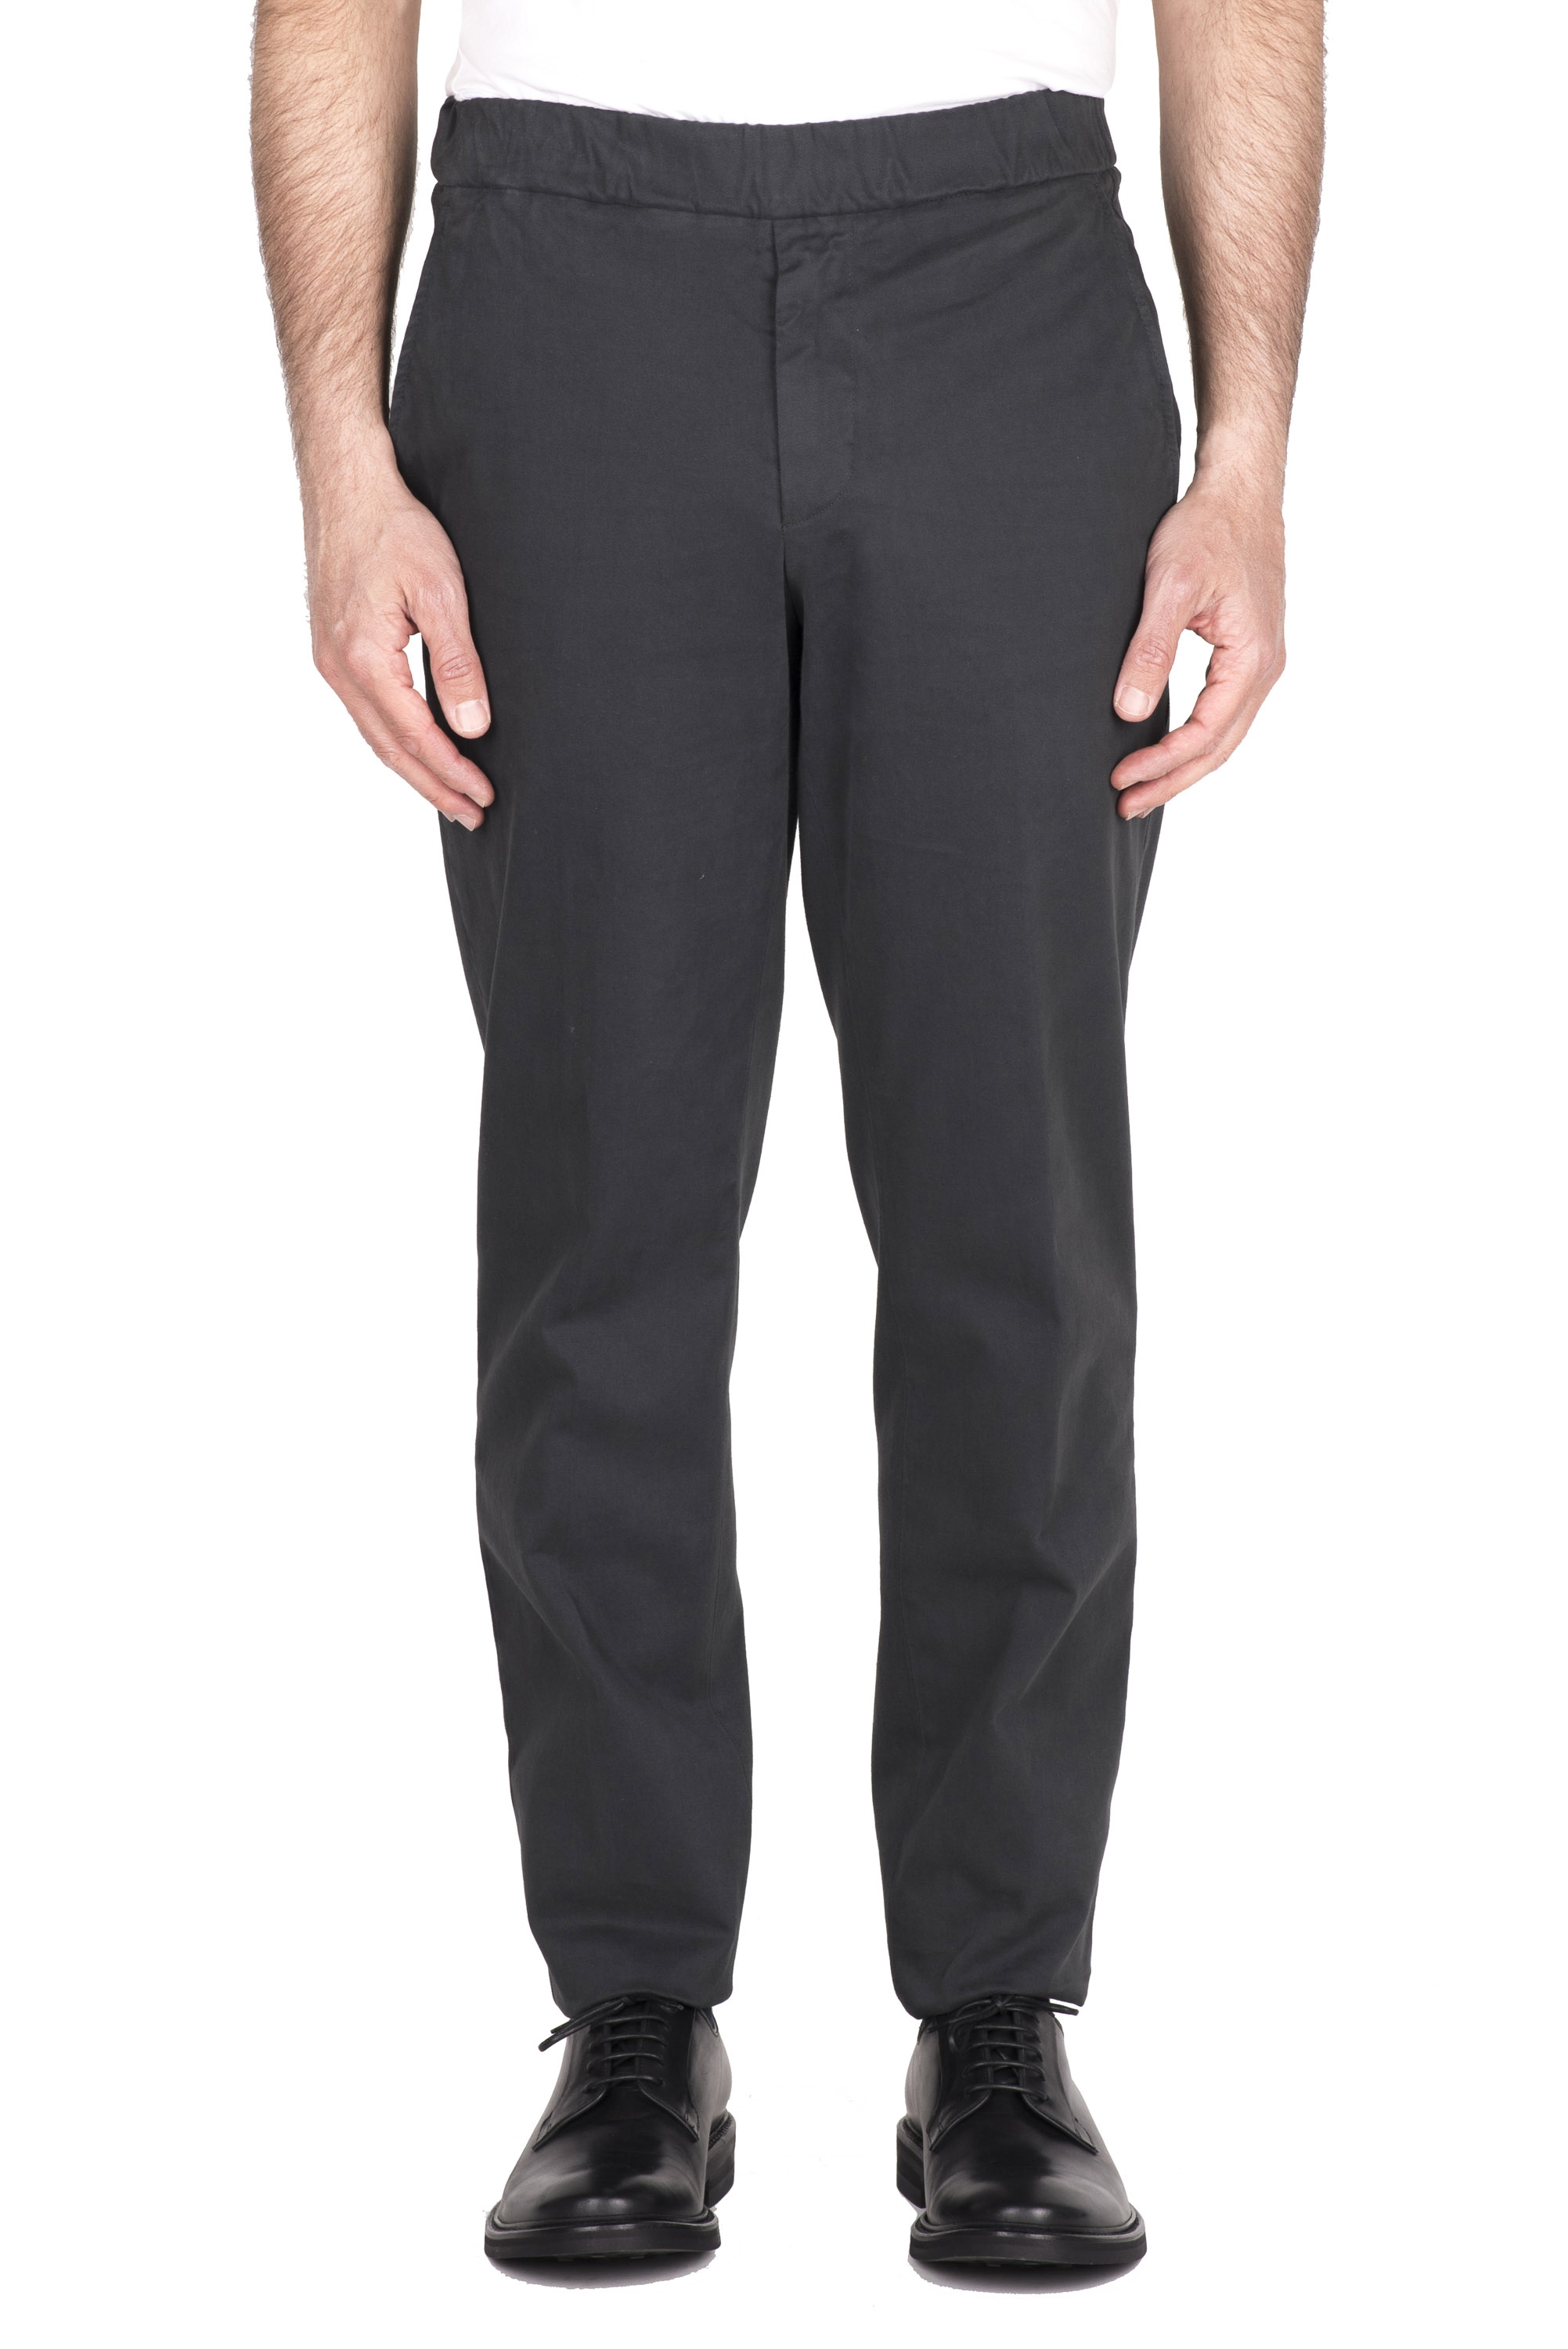 SBU 03440_2021AW Pantaloni comfort in cotone elasticizzato grigio 01